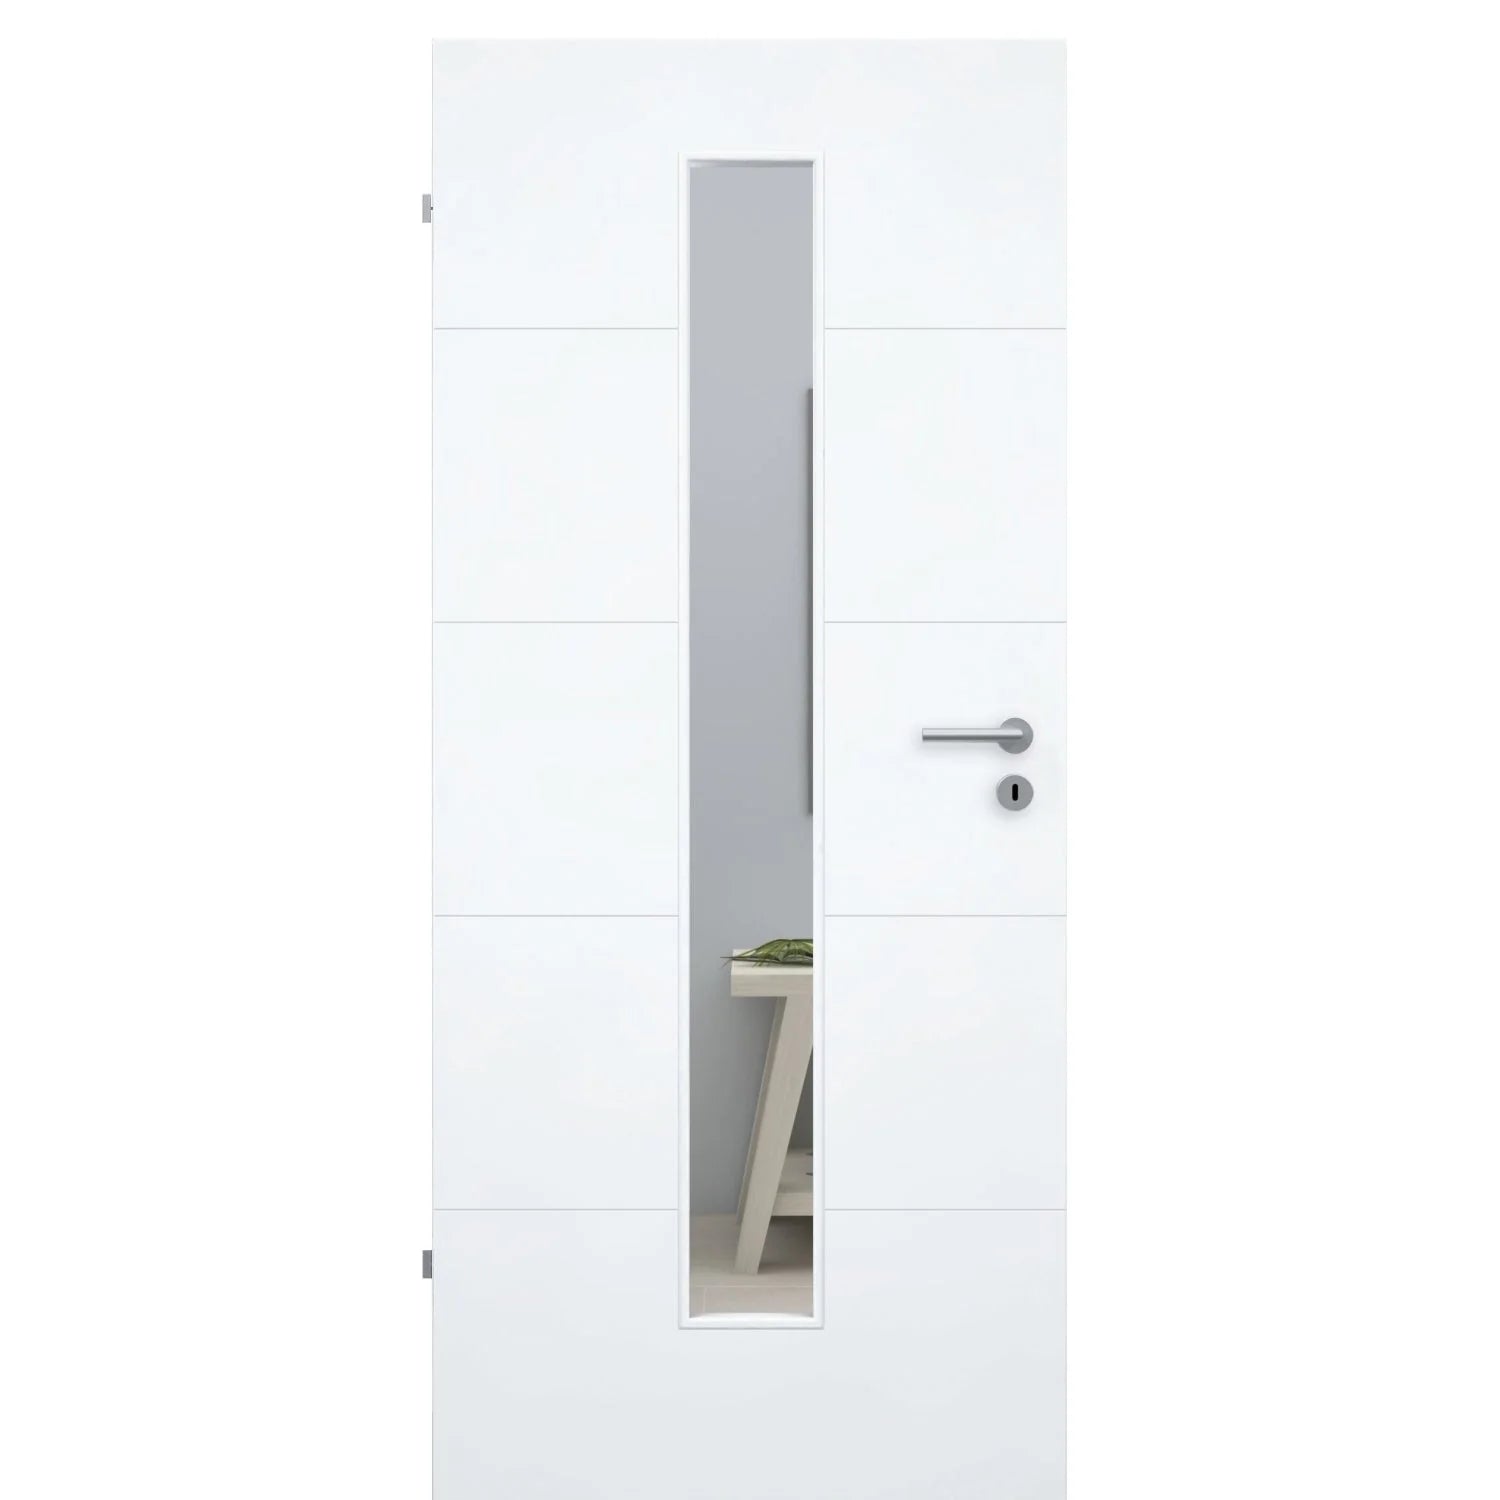 Zimmertür mit Lichtausschnitt brillant-weiß 4 Rillen Designkante - Modell Designtür Q43LAM